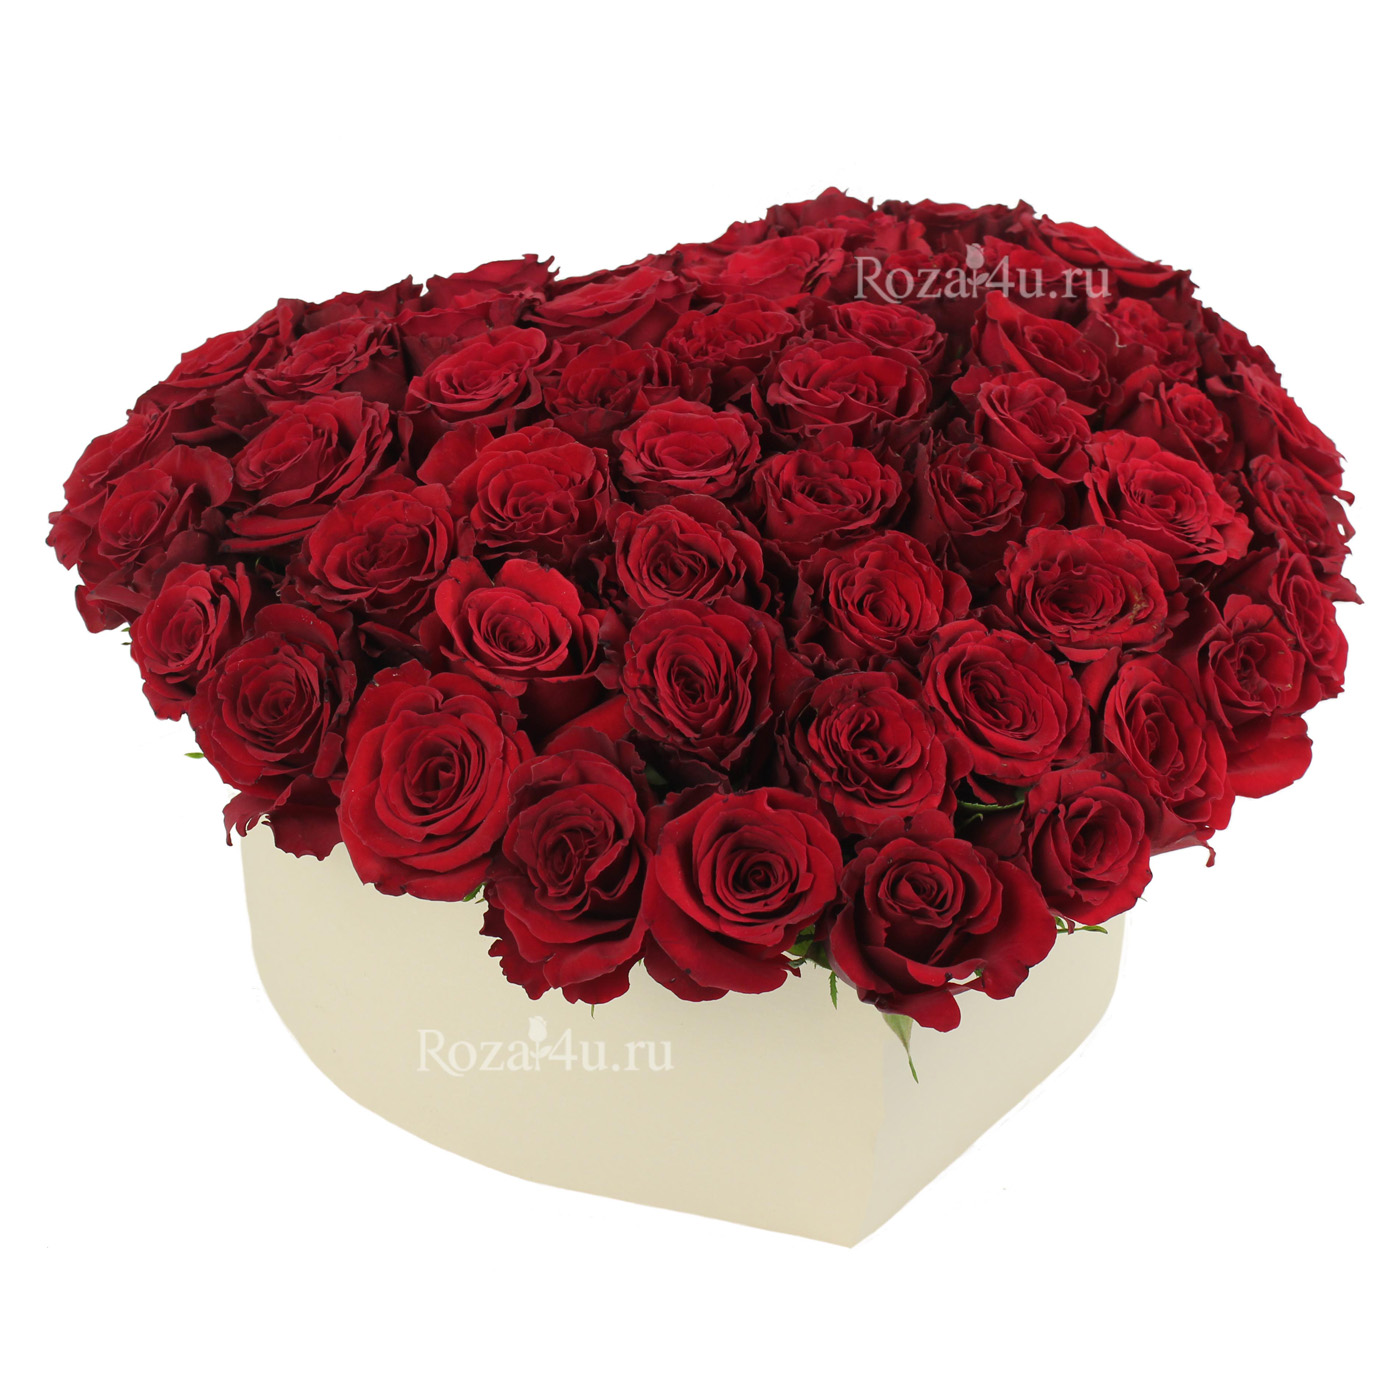 Красные розы в коробке формы сердца "День любви"